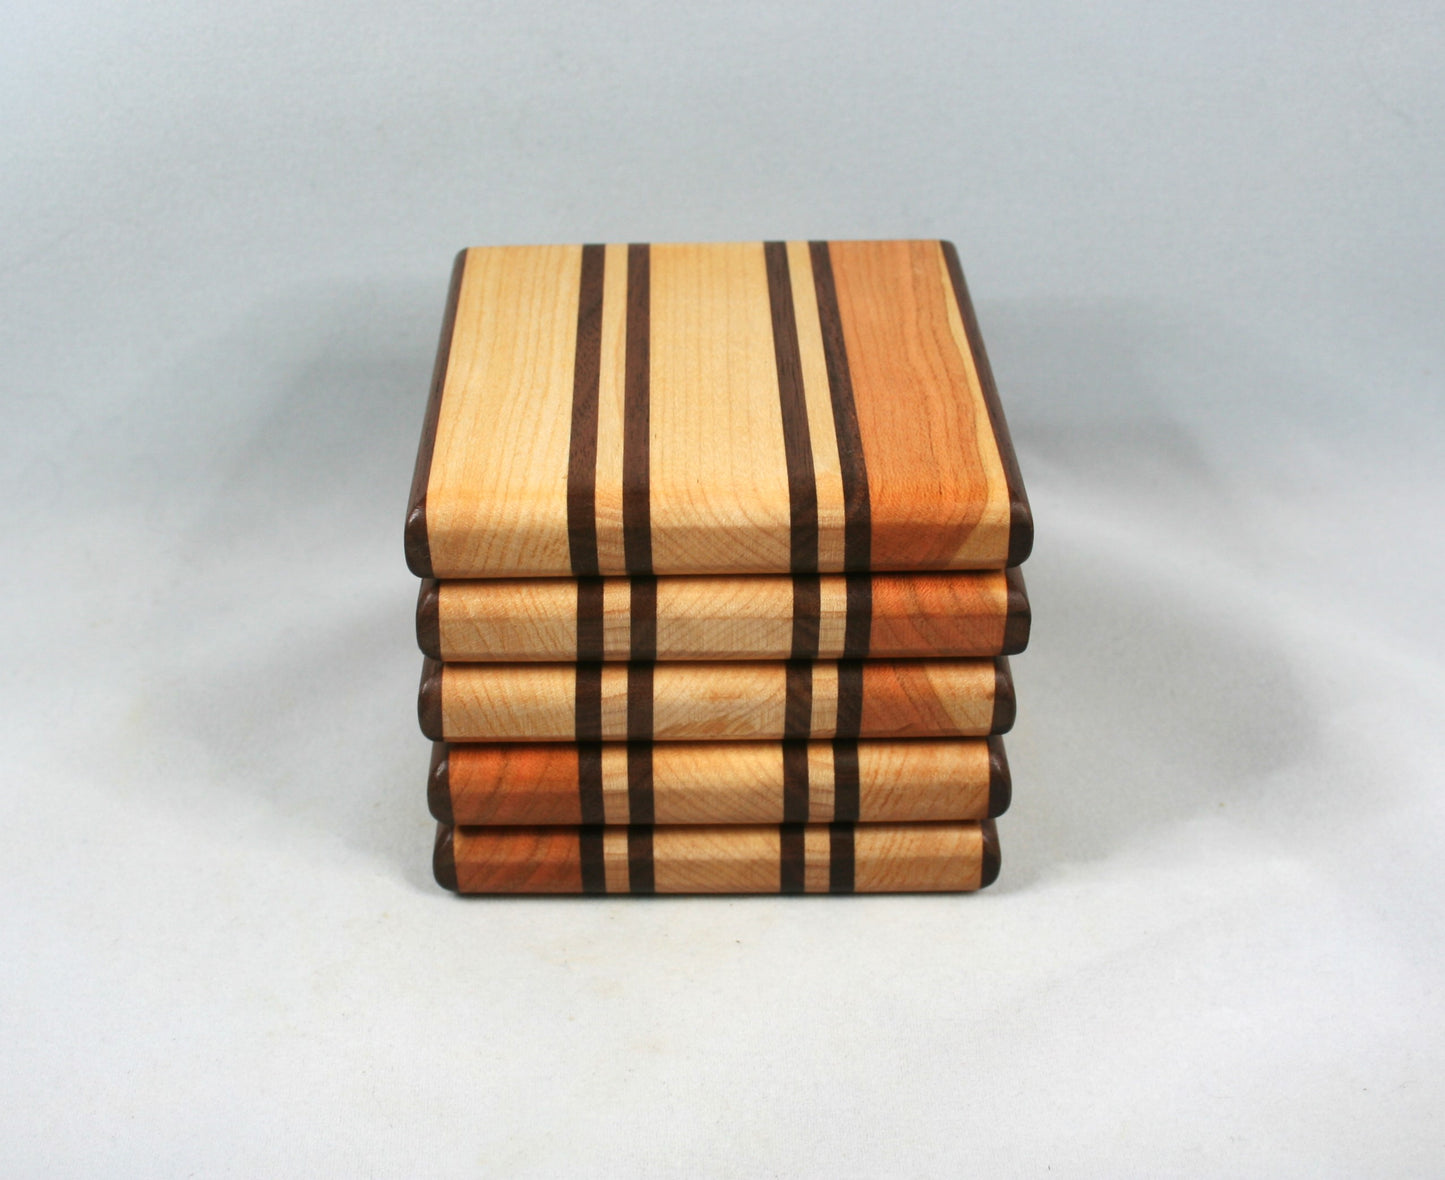 Maple and Walnut Hardwood Coaster set of 5